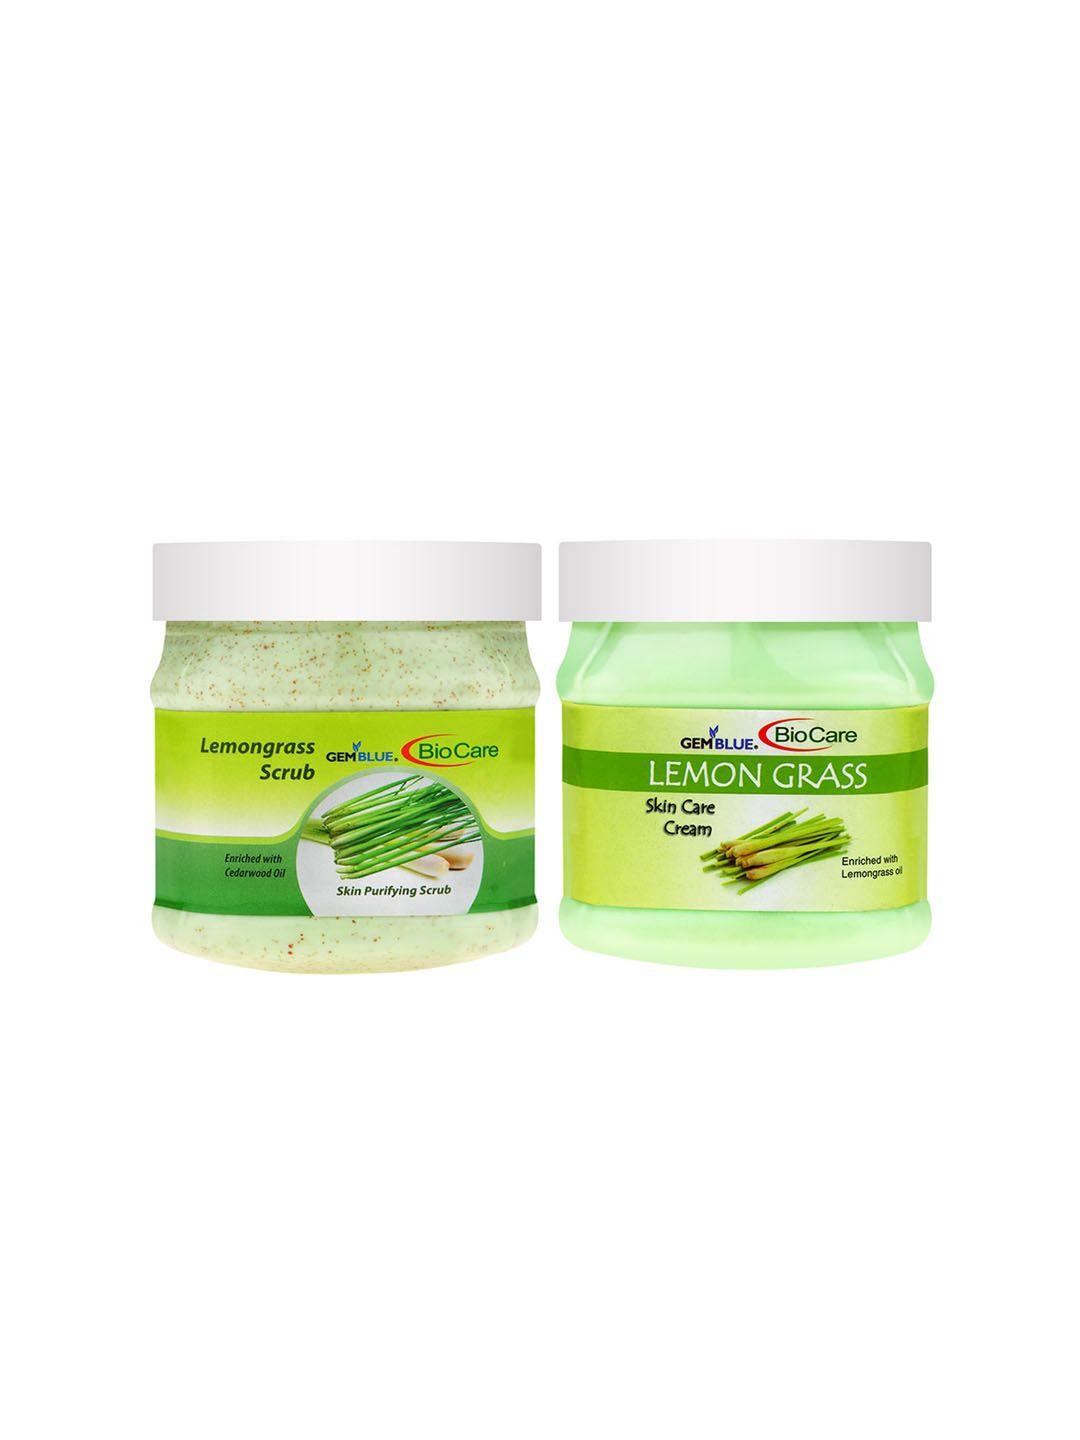 gemblue biocare set of lemongrass scrub & cream 500ml each